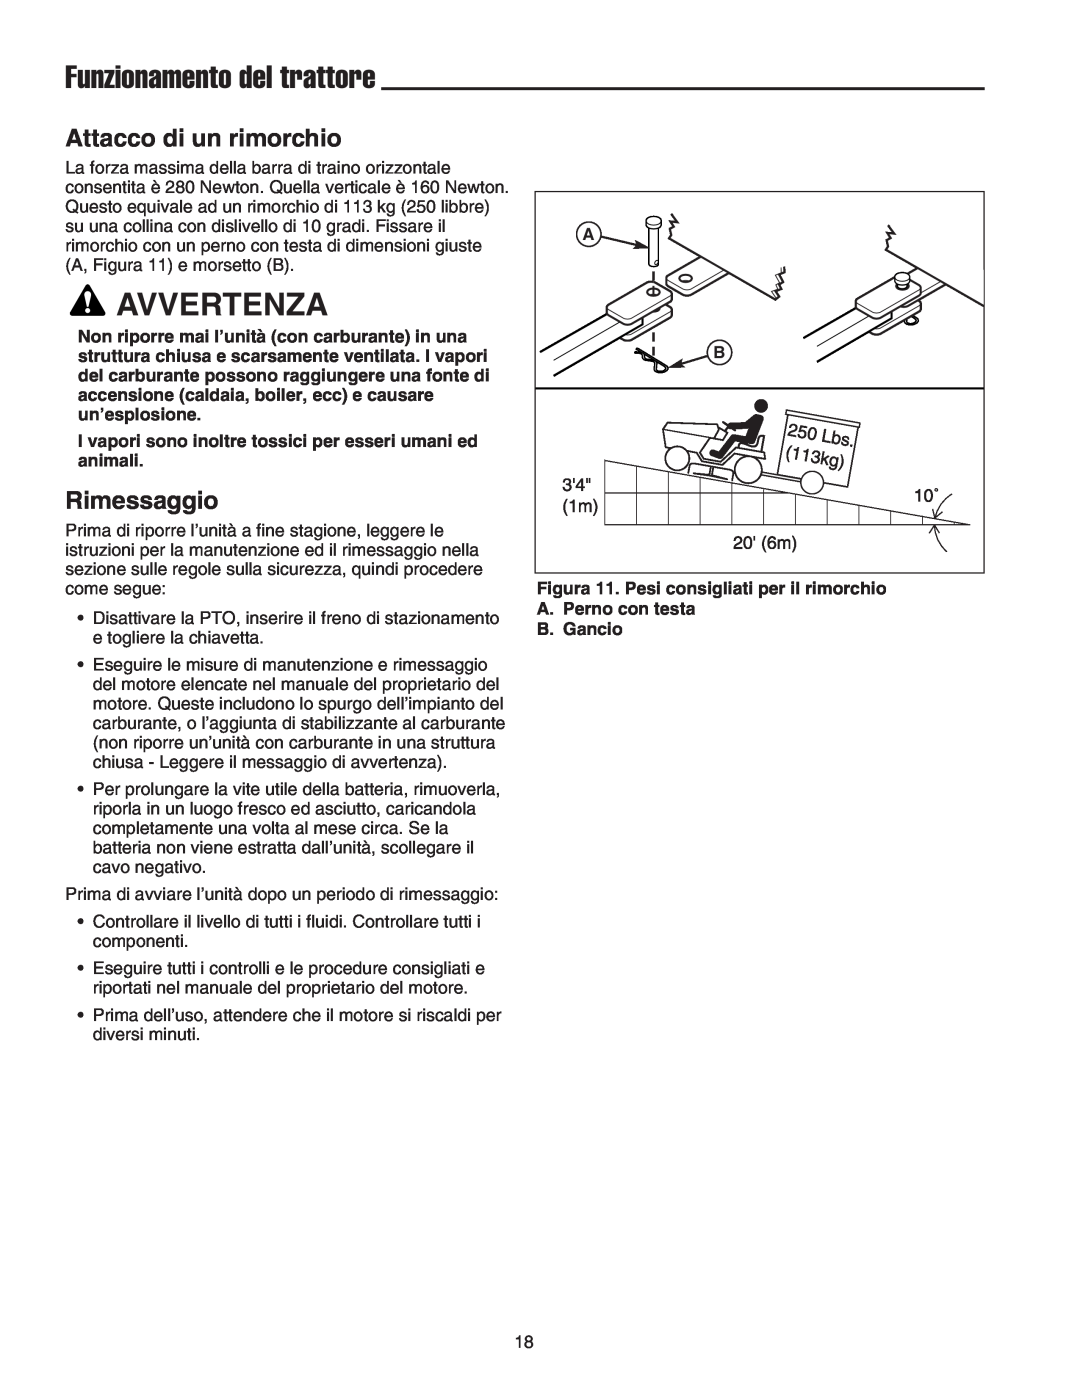 Briggs & Stratton Printer instruction sheet Attacco di un rimorchio, Rimessaggio, Funzionamento del trattore, Avvertenza 